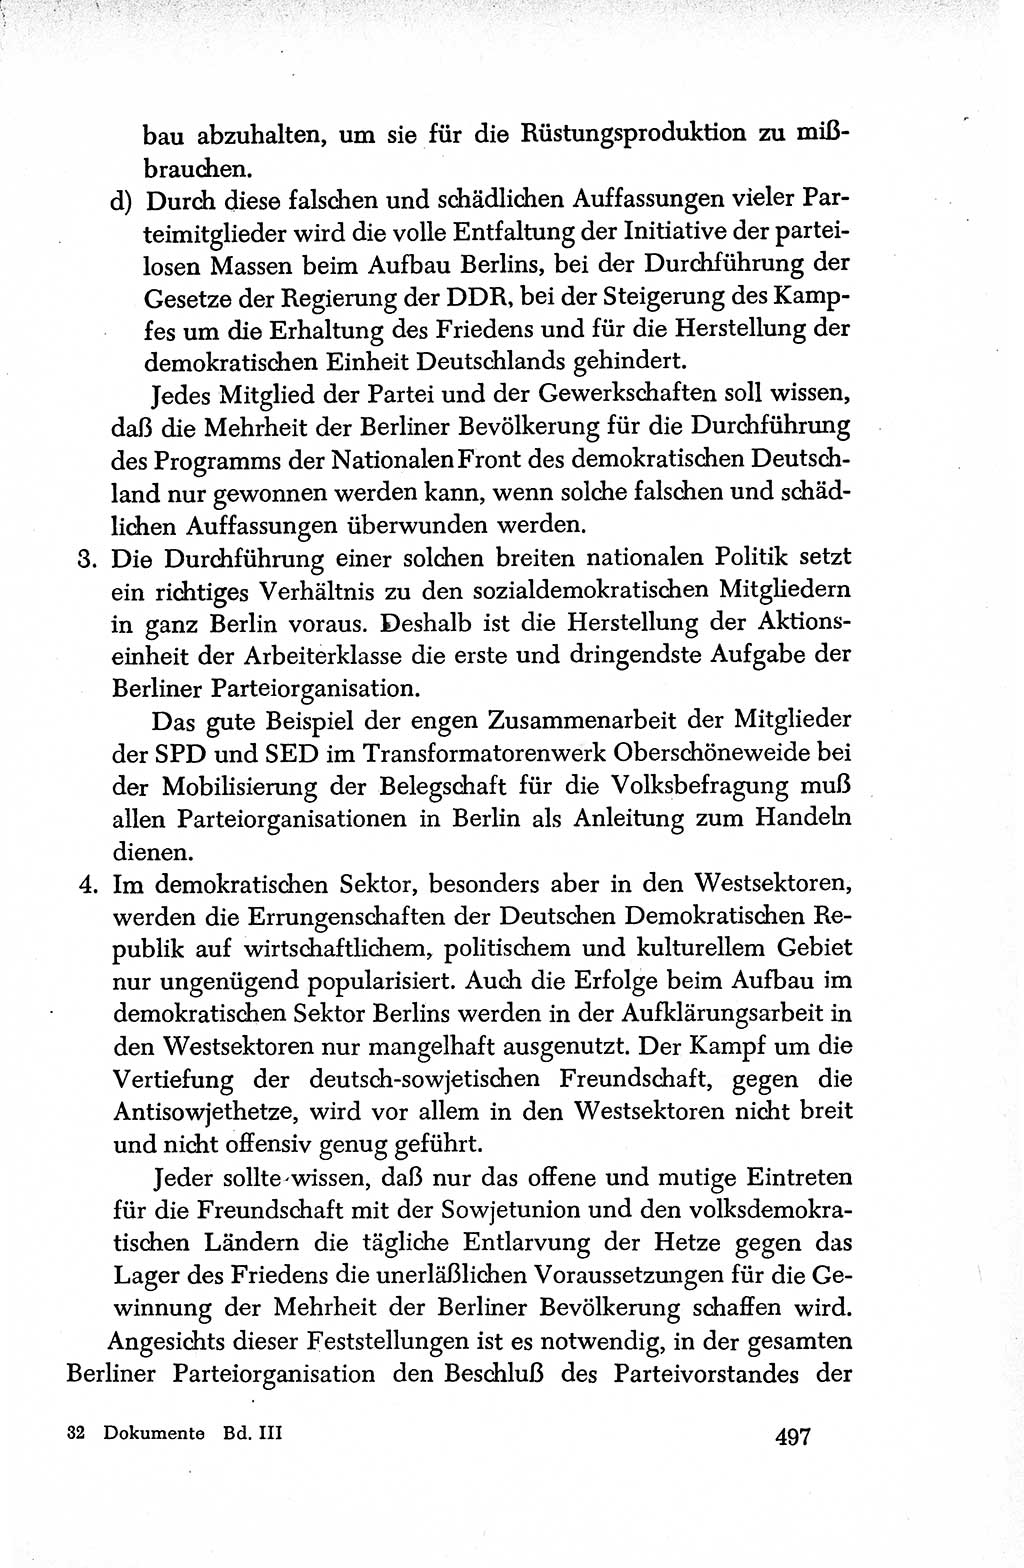 Dokumente der Sozialistischen Einheitspartei Deutschlands (SED) [Deutsche Demokratische Republik (DDR)] 1950-1952, Seite 497 (Dok. SED DDR 1950-1952, S. 497)